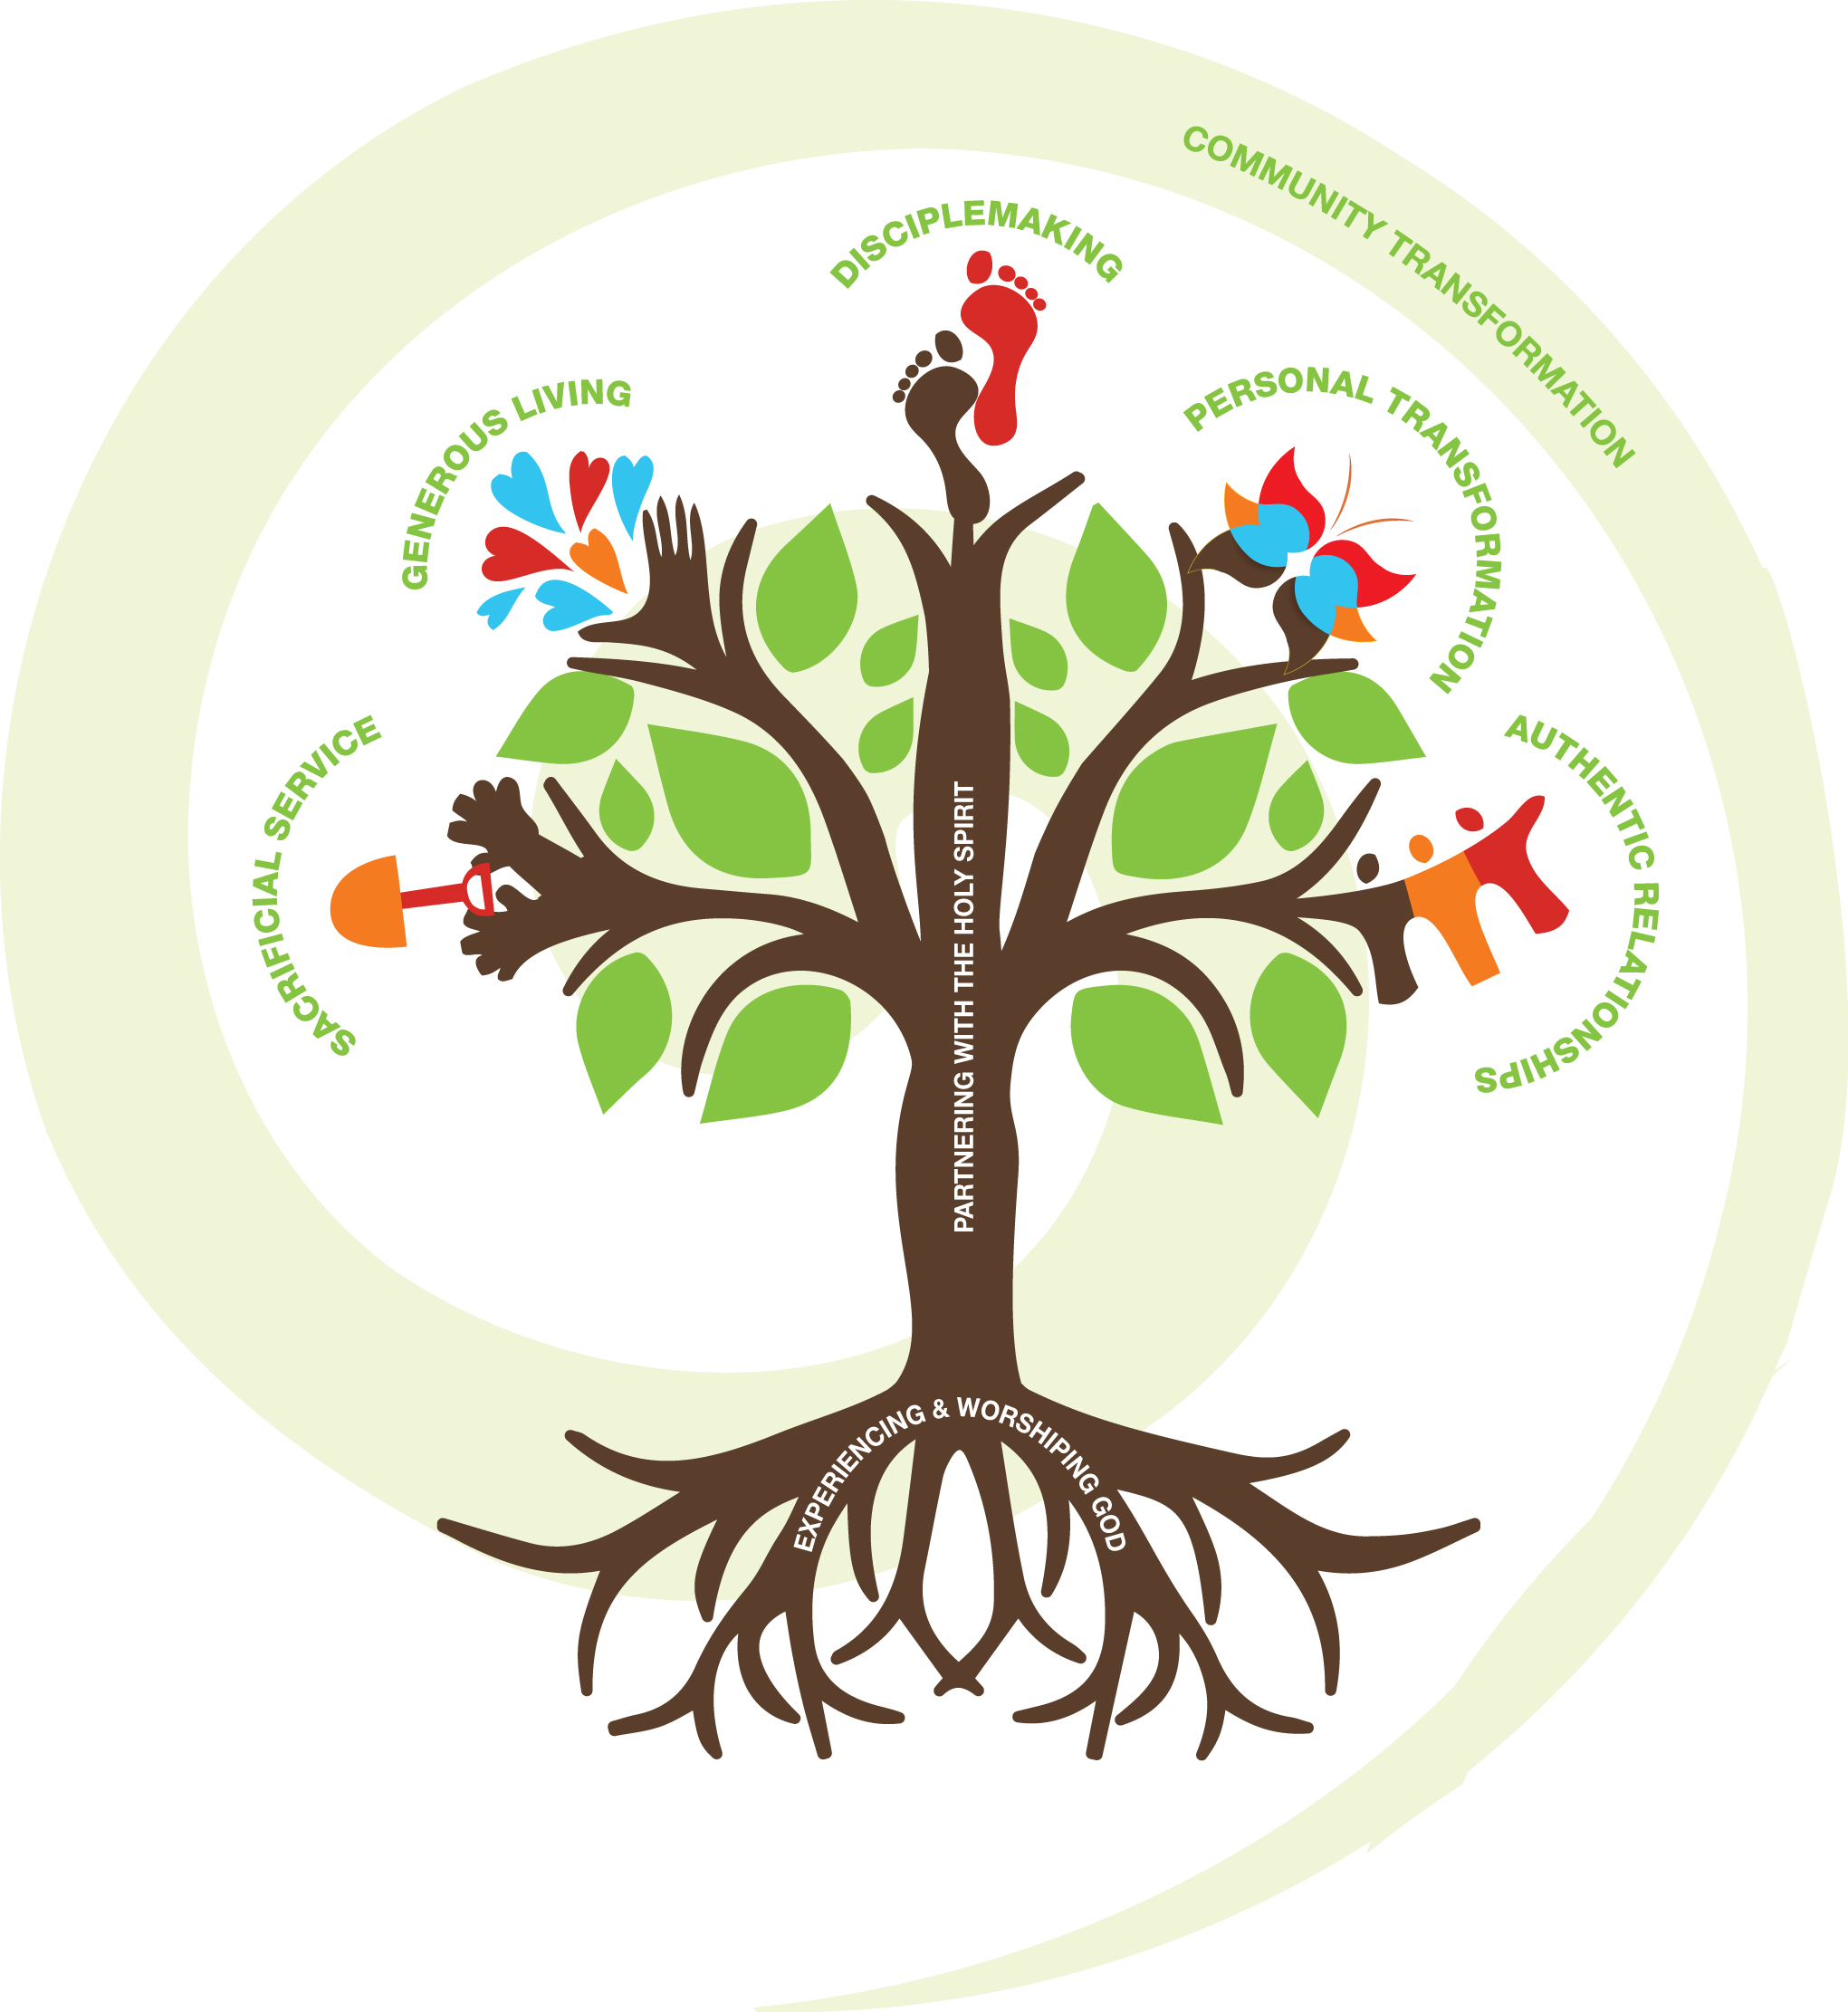 Tree of Discipleship